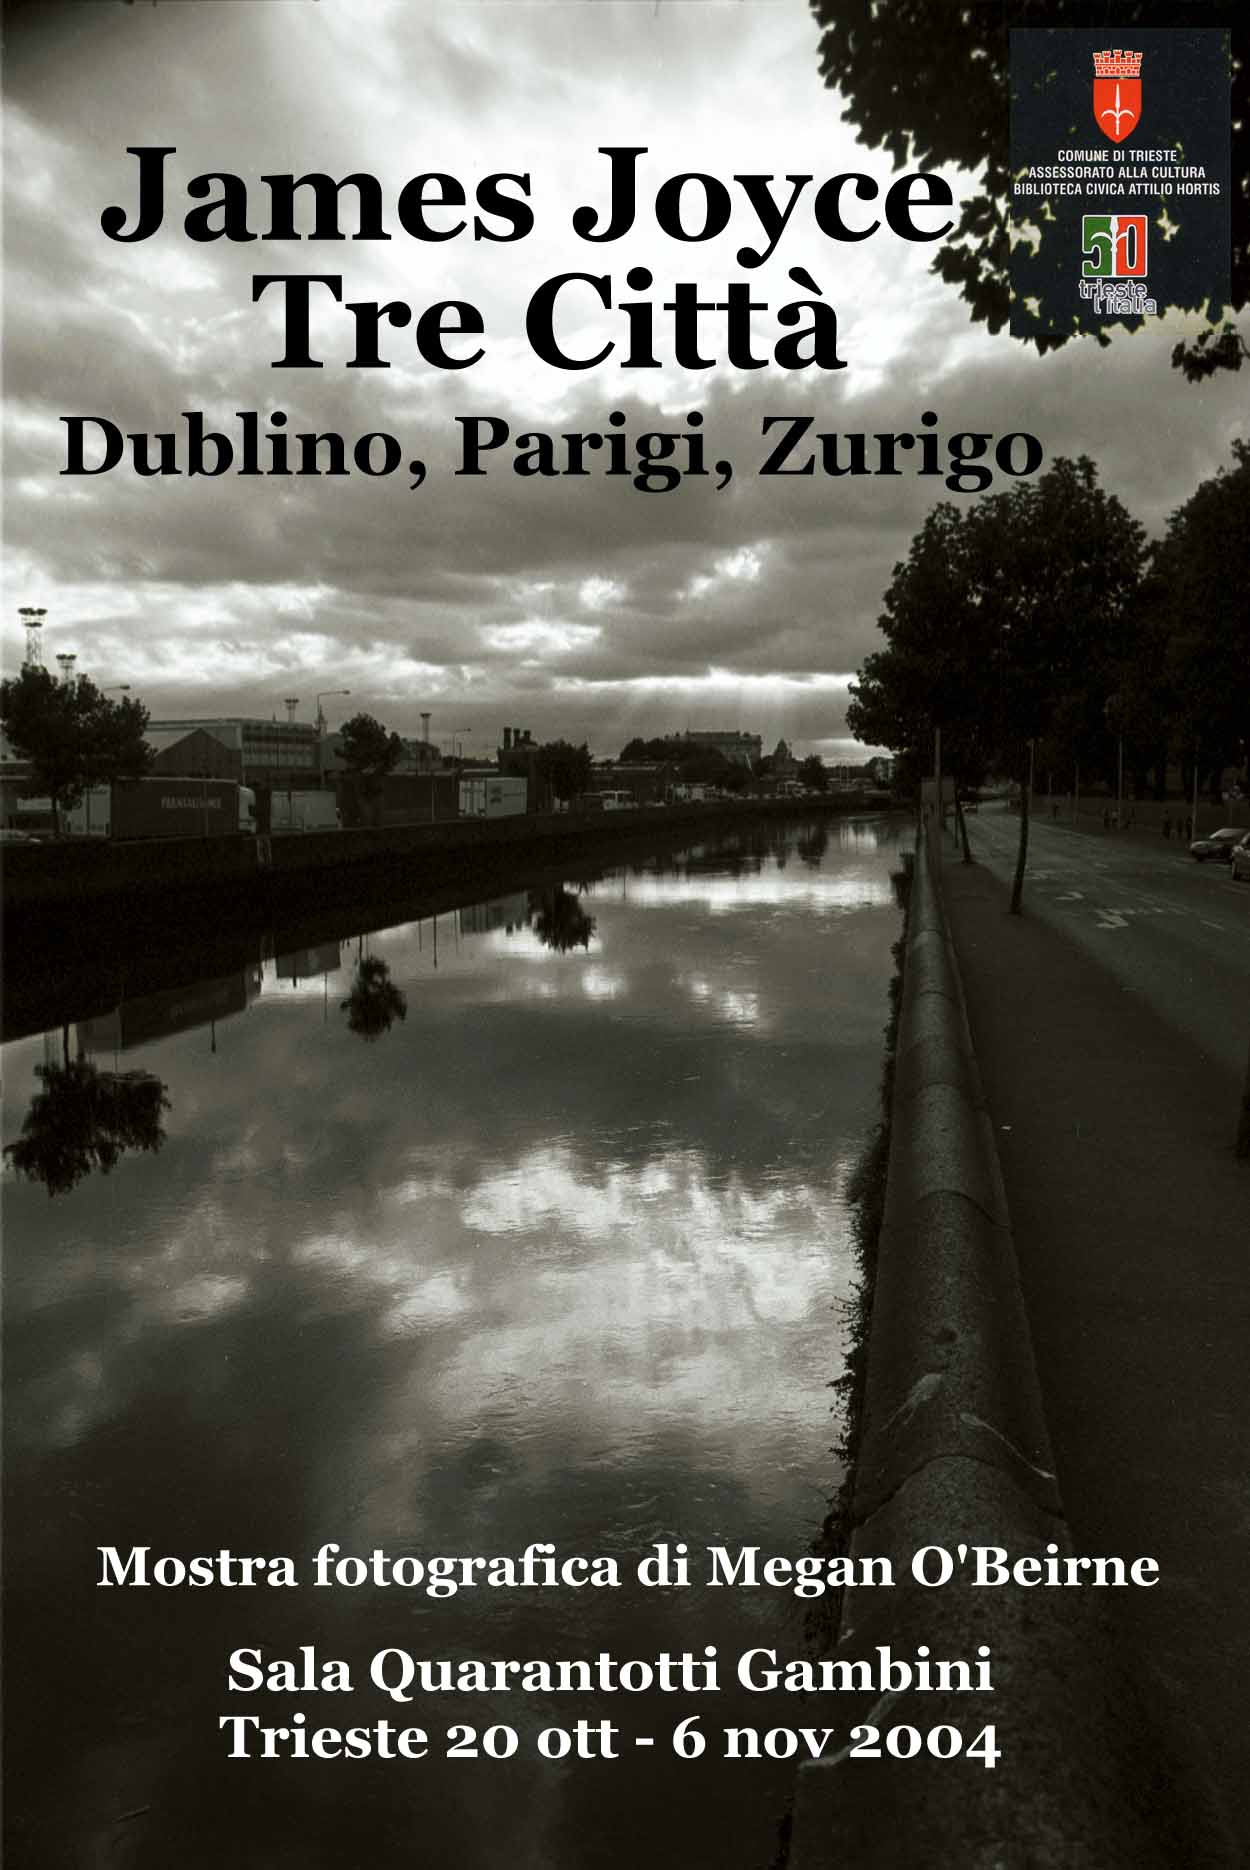 James Joyce Tre Citta: Dublino, Zurigo, Parigi; a Trieste